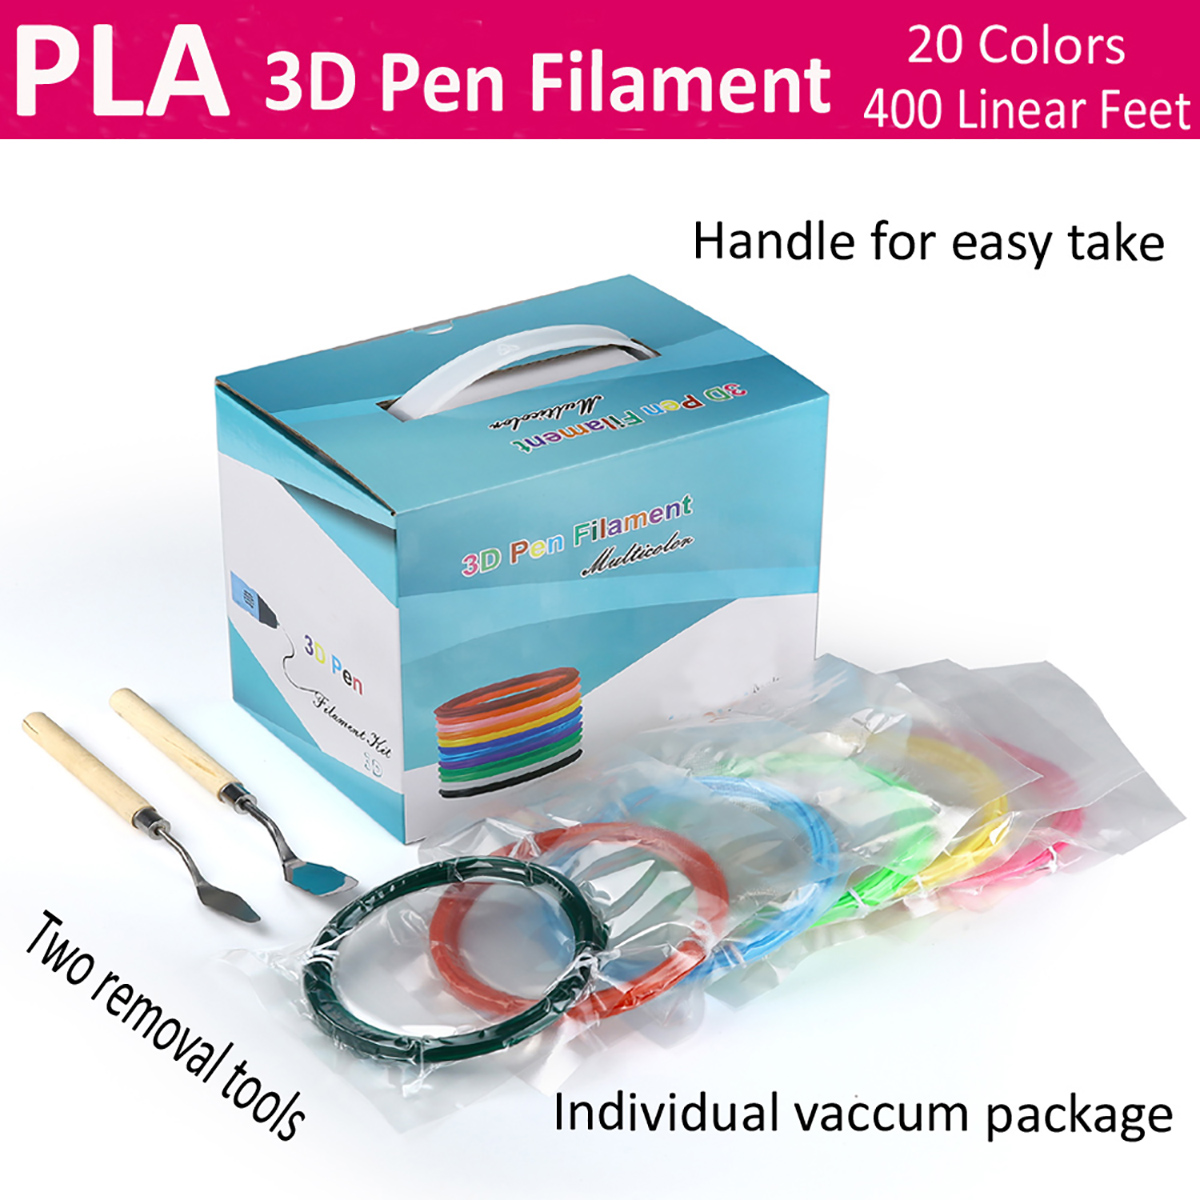 PLA 3D-penfilament2